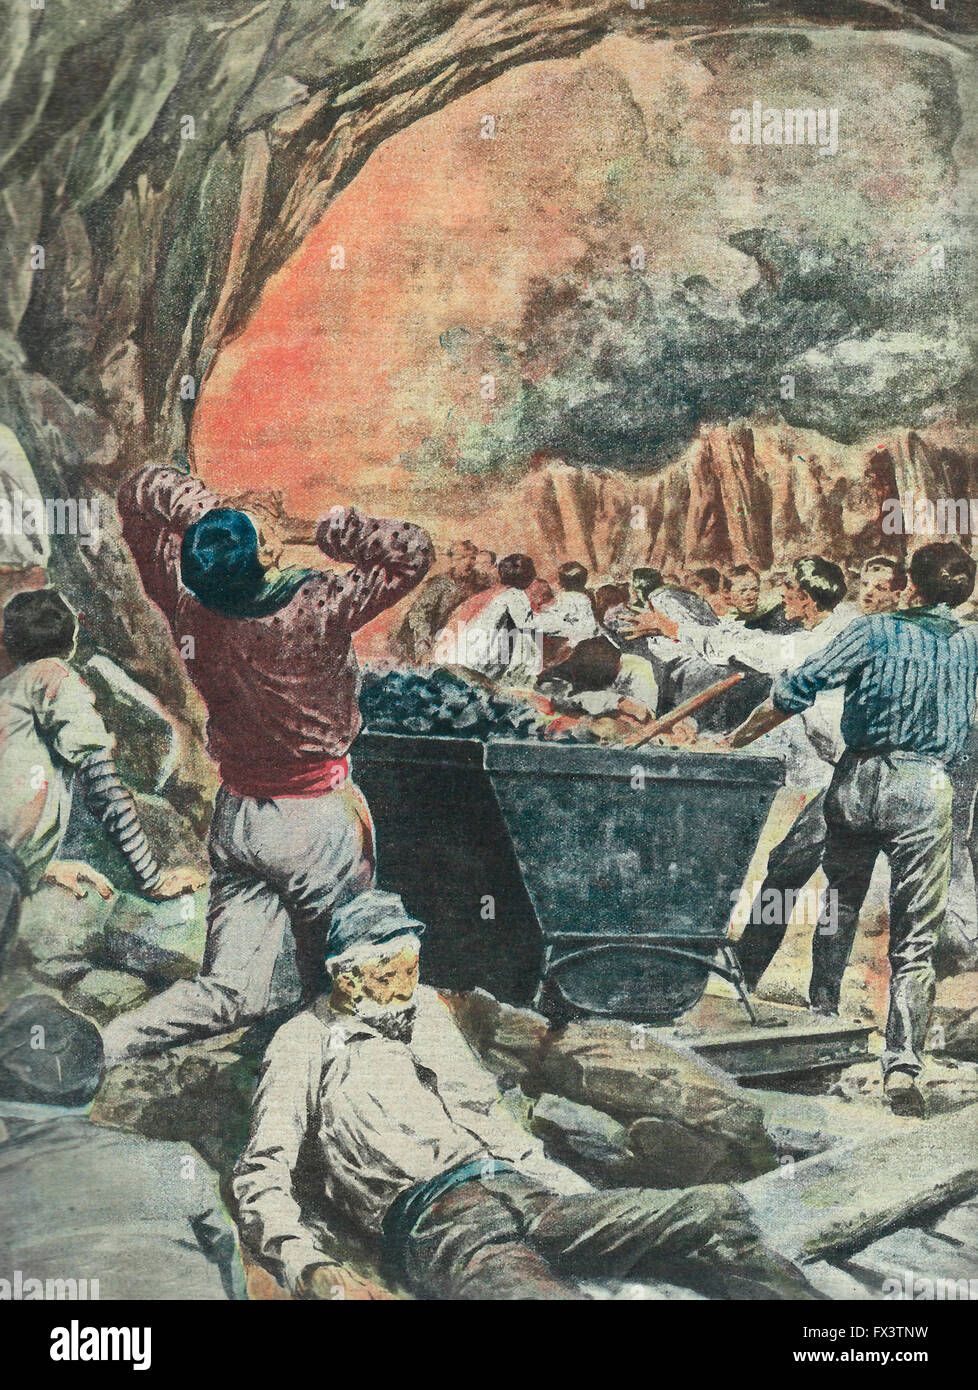 Le tragedie del ' umida di fuoco": la spaventosa agonia di 300 minatori vittime di una esplosione che ha provocato il fuoco di una miniera in inglese. Novembre 1914 Foto Stock